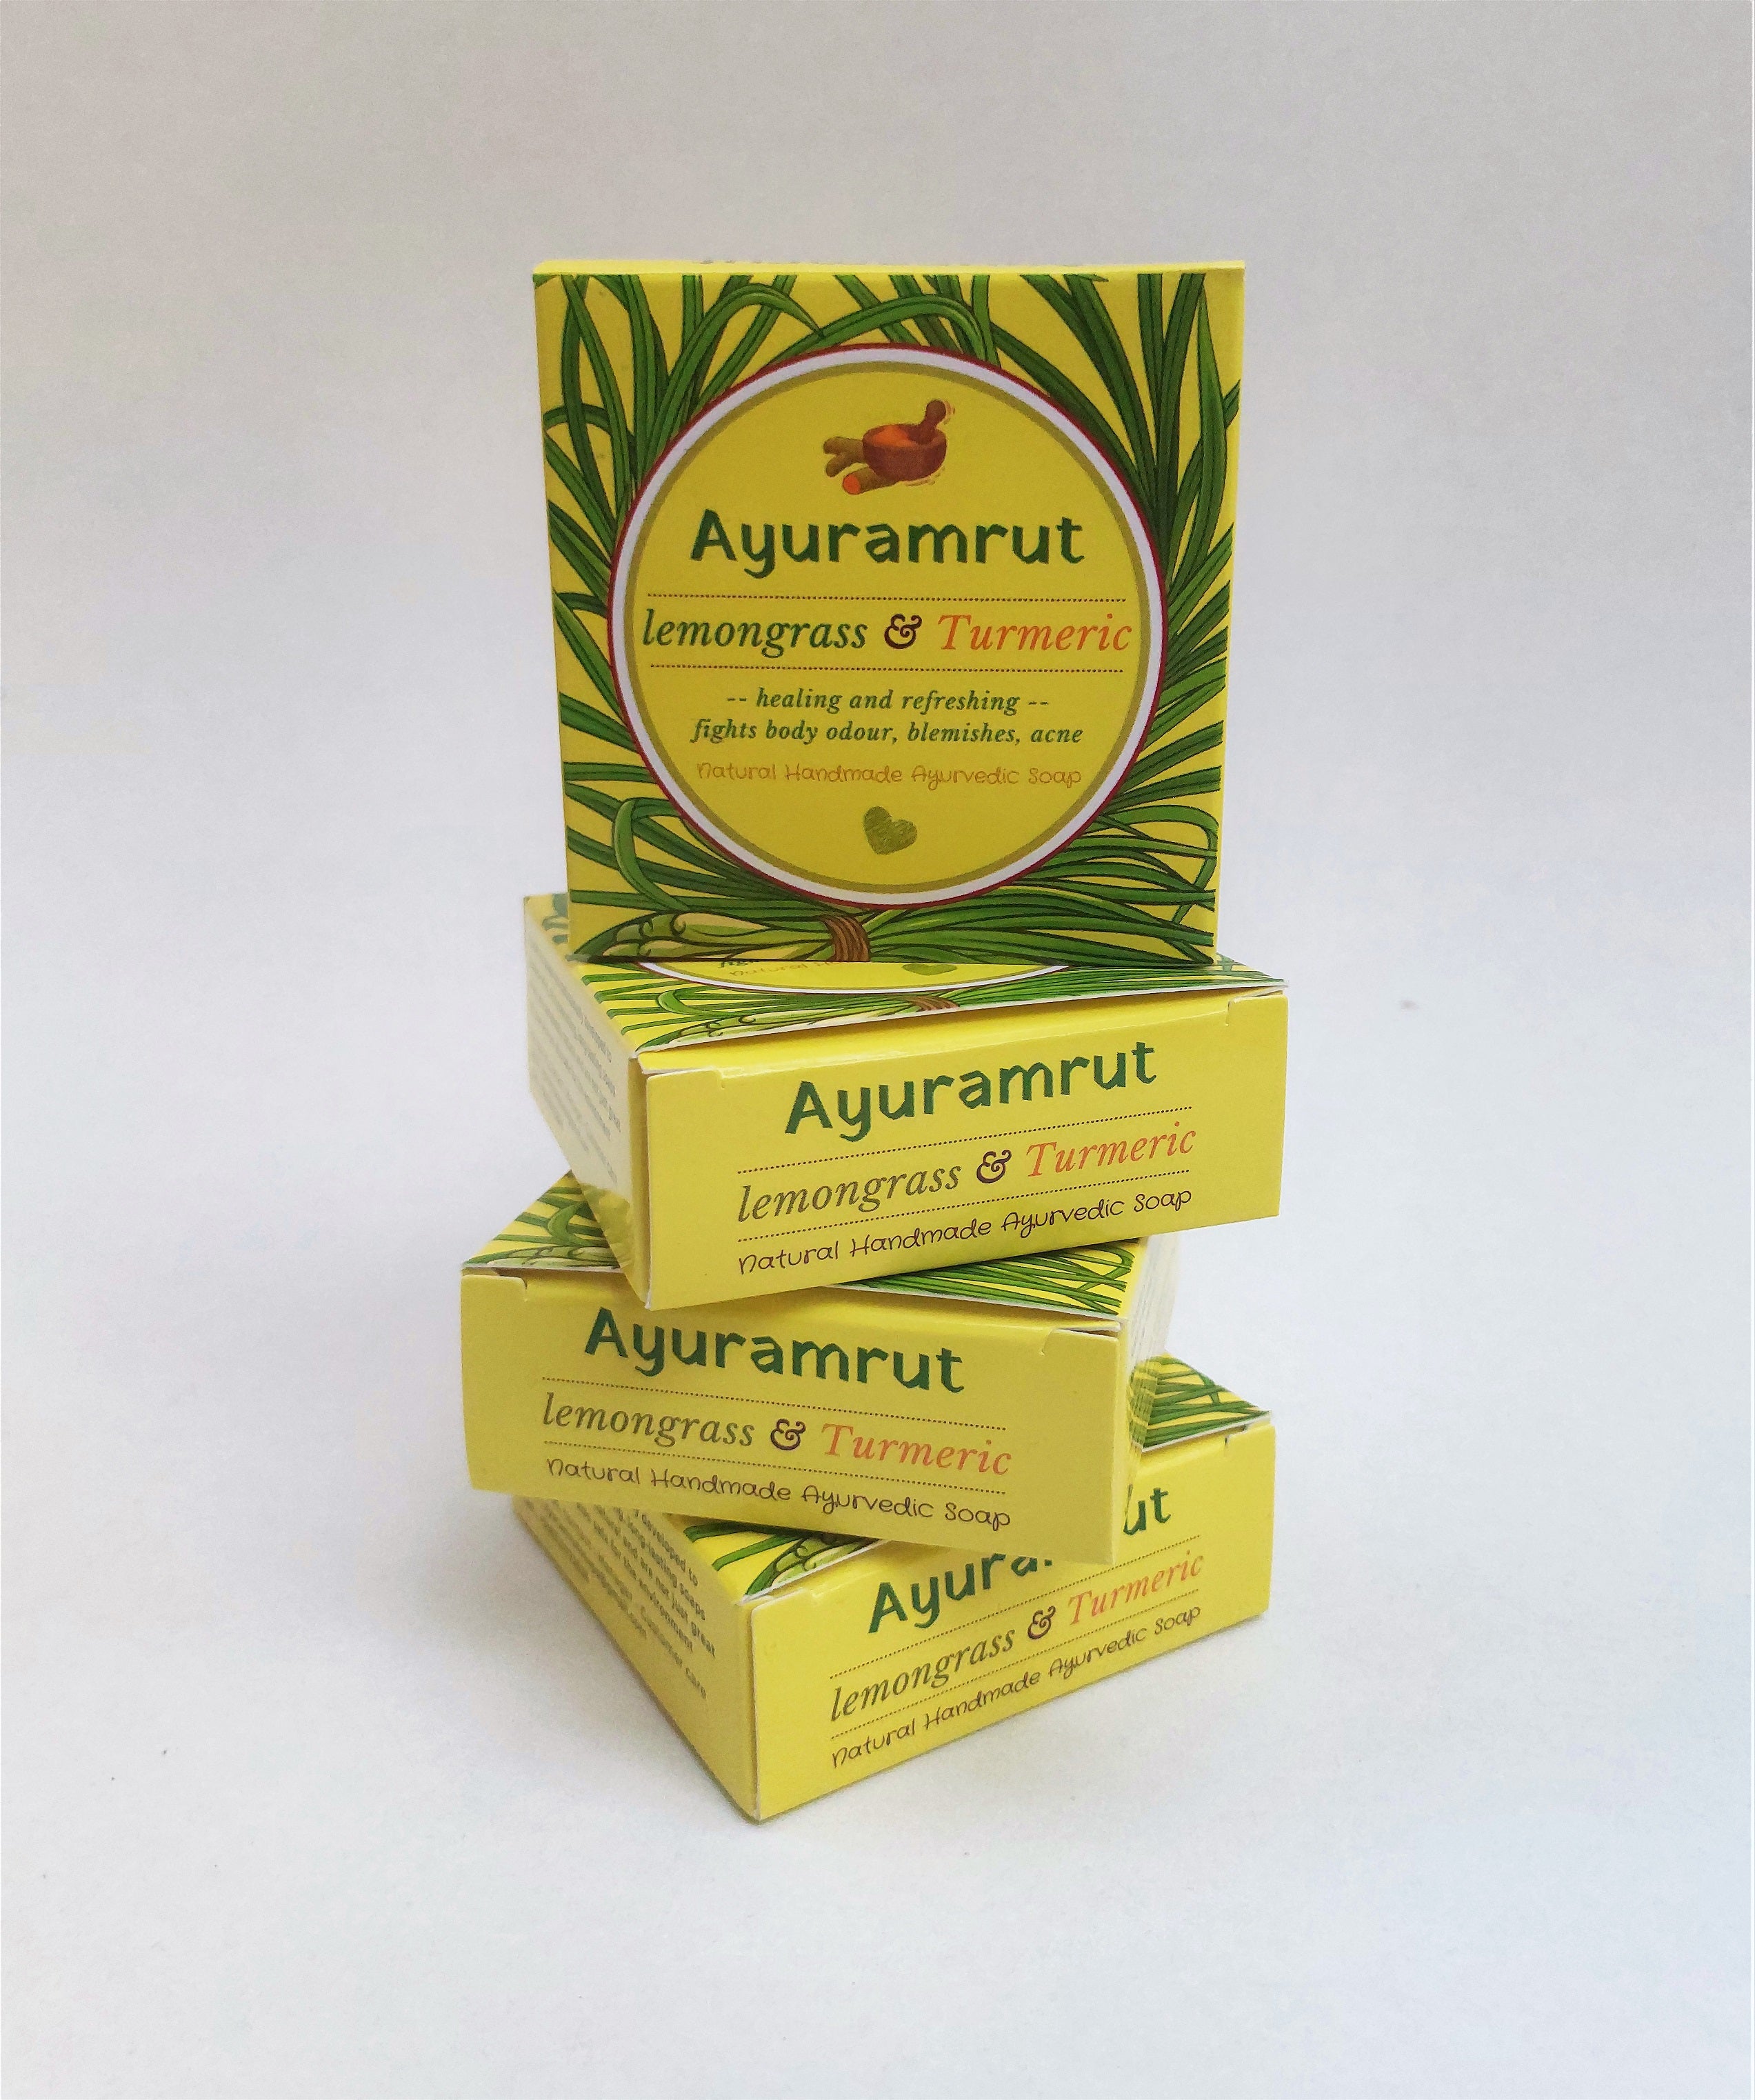 Ayuramrut Lemongrass and Turmeric Natural Handmade Ayurvedic Soap (Pack of 4)